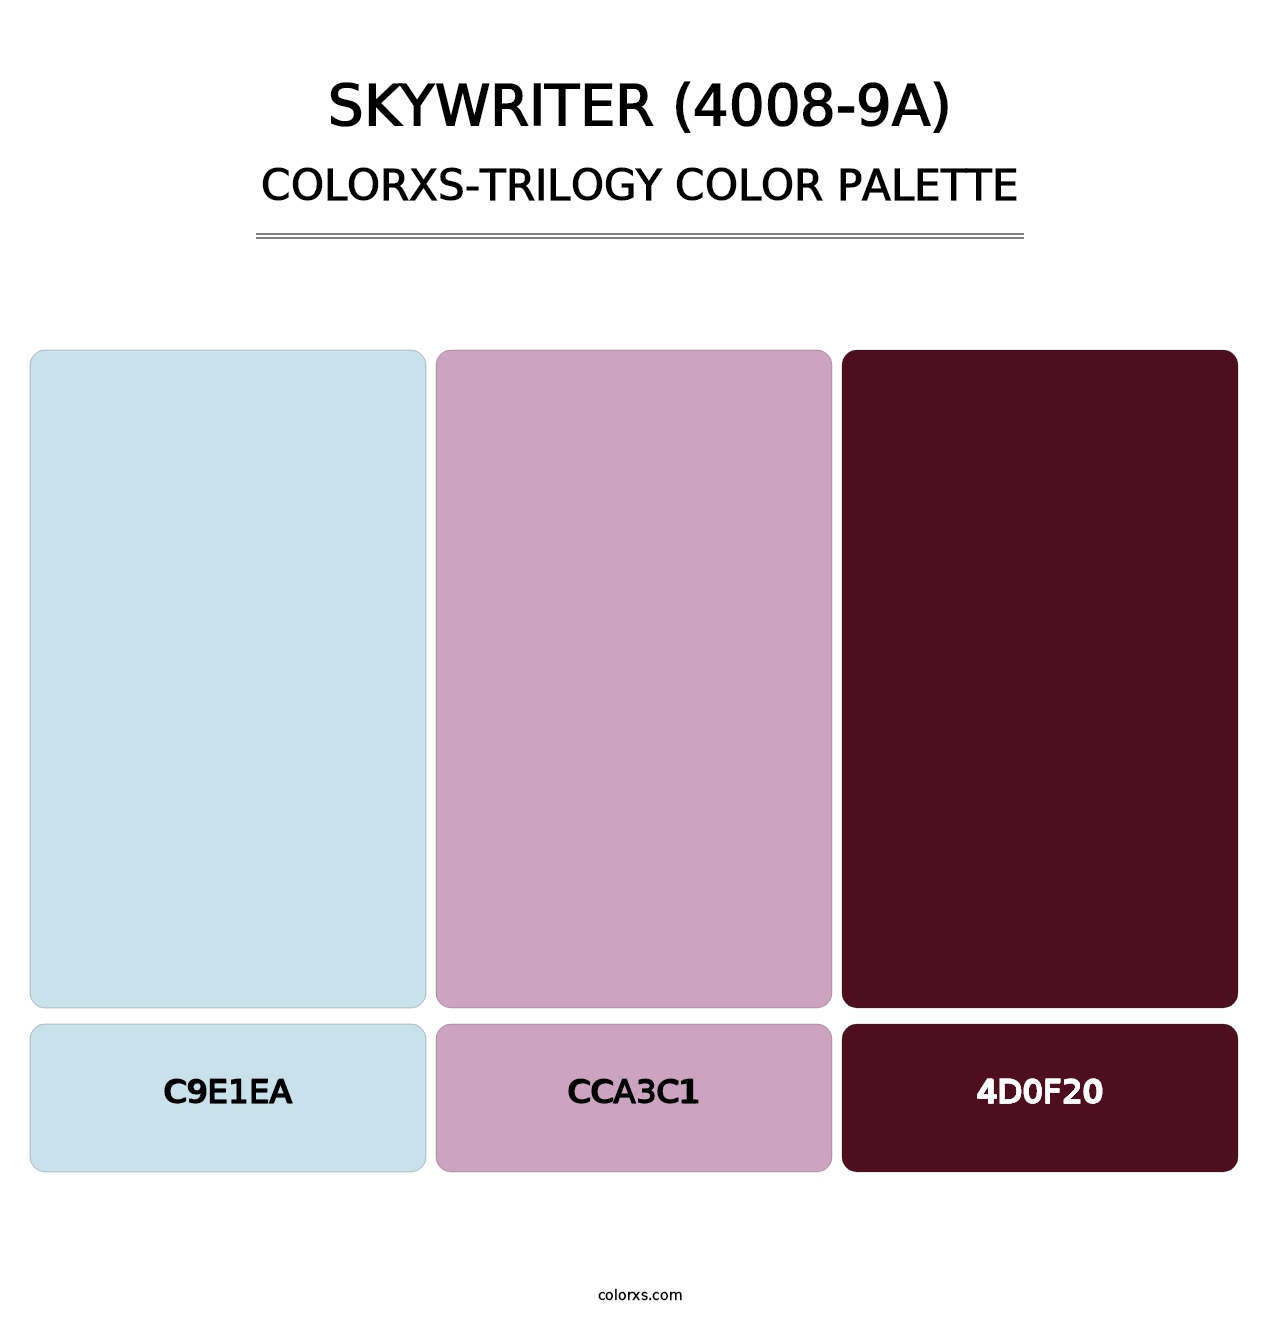 Skywriter (4008-9A) - Colorxs Trilogy Palette